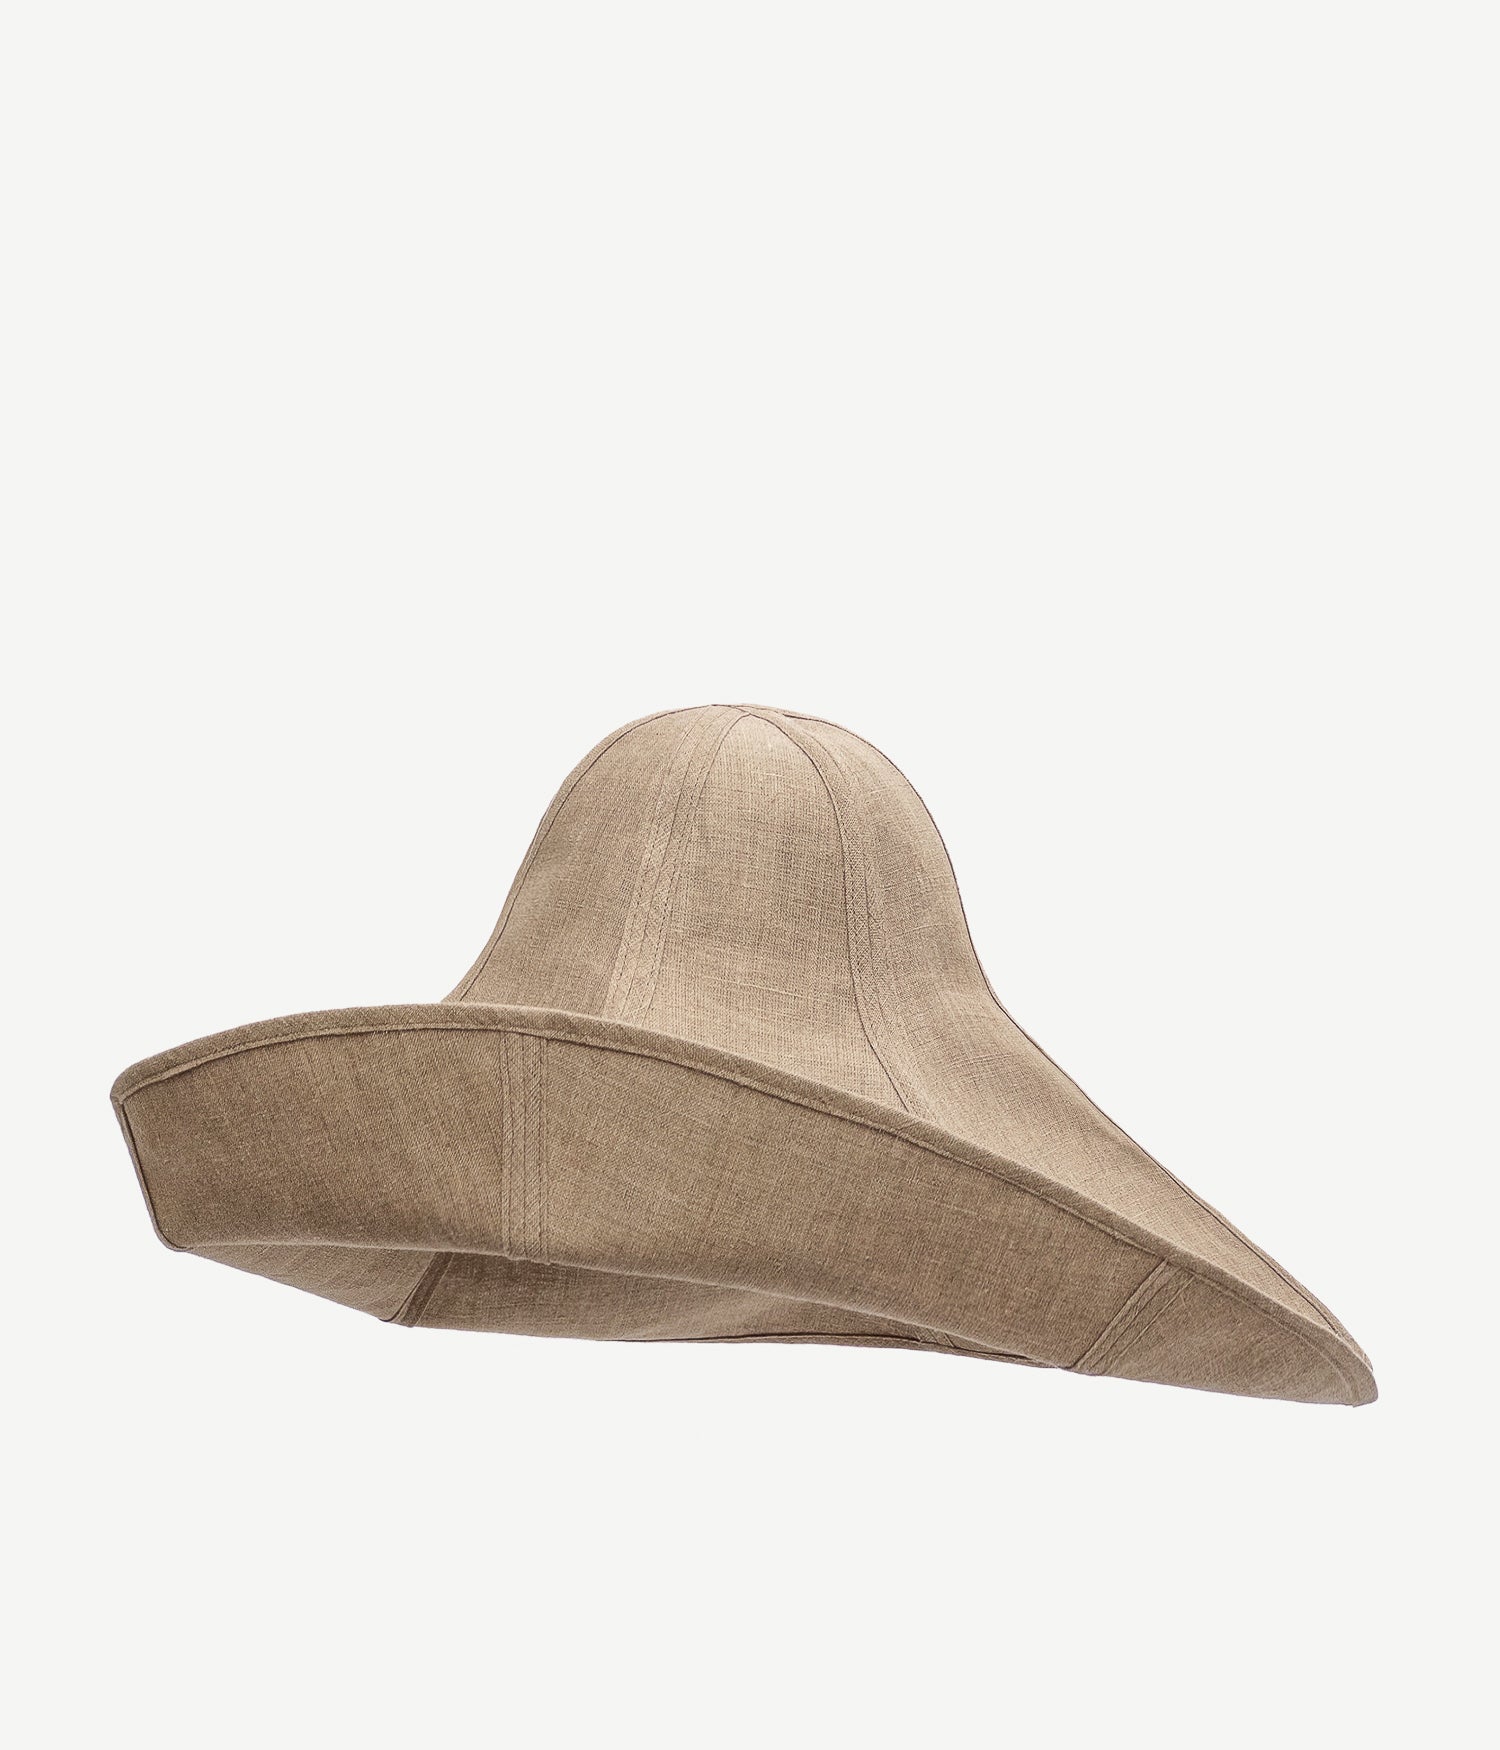 Foldable Oversized Hat